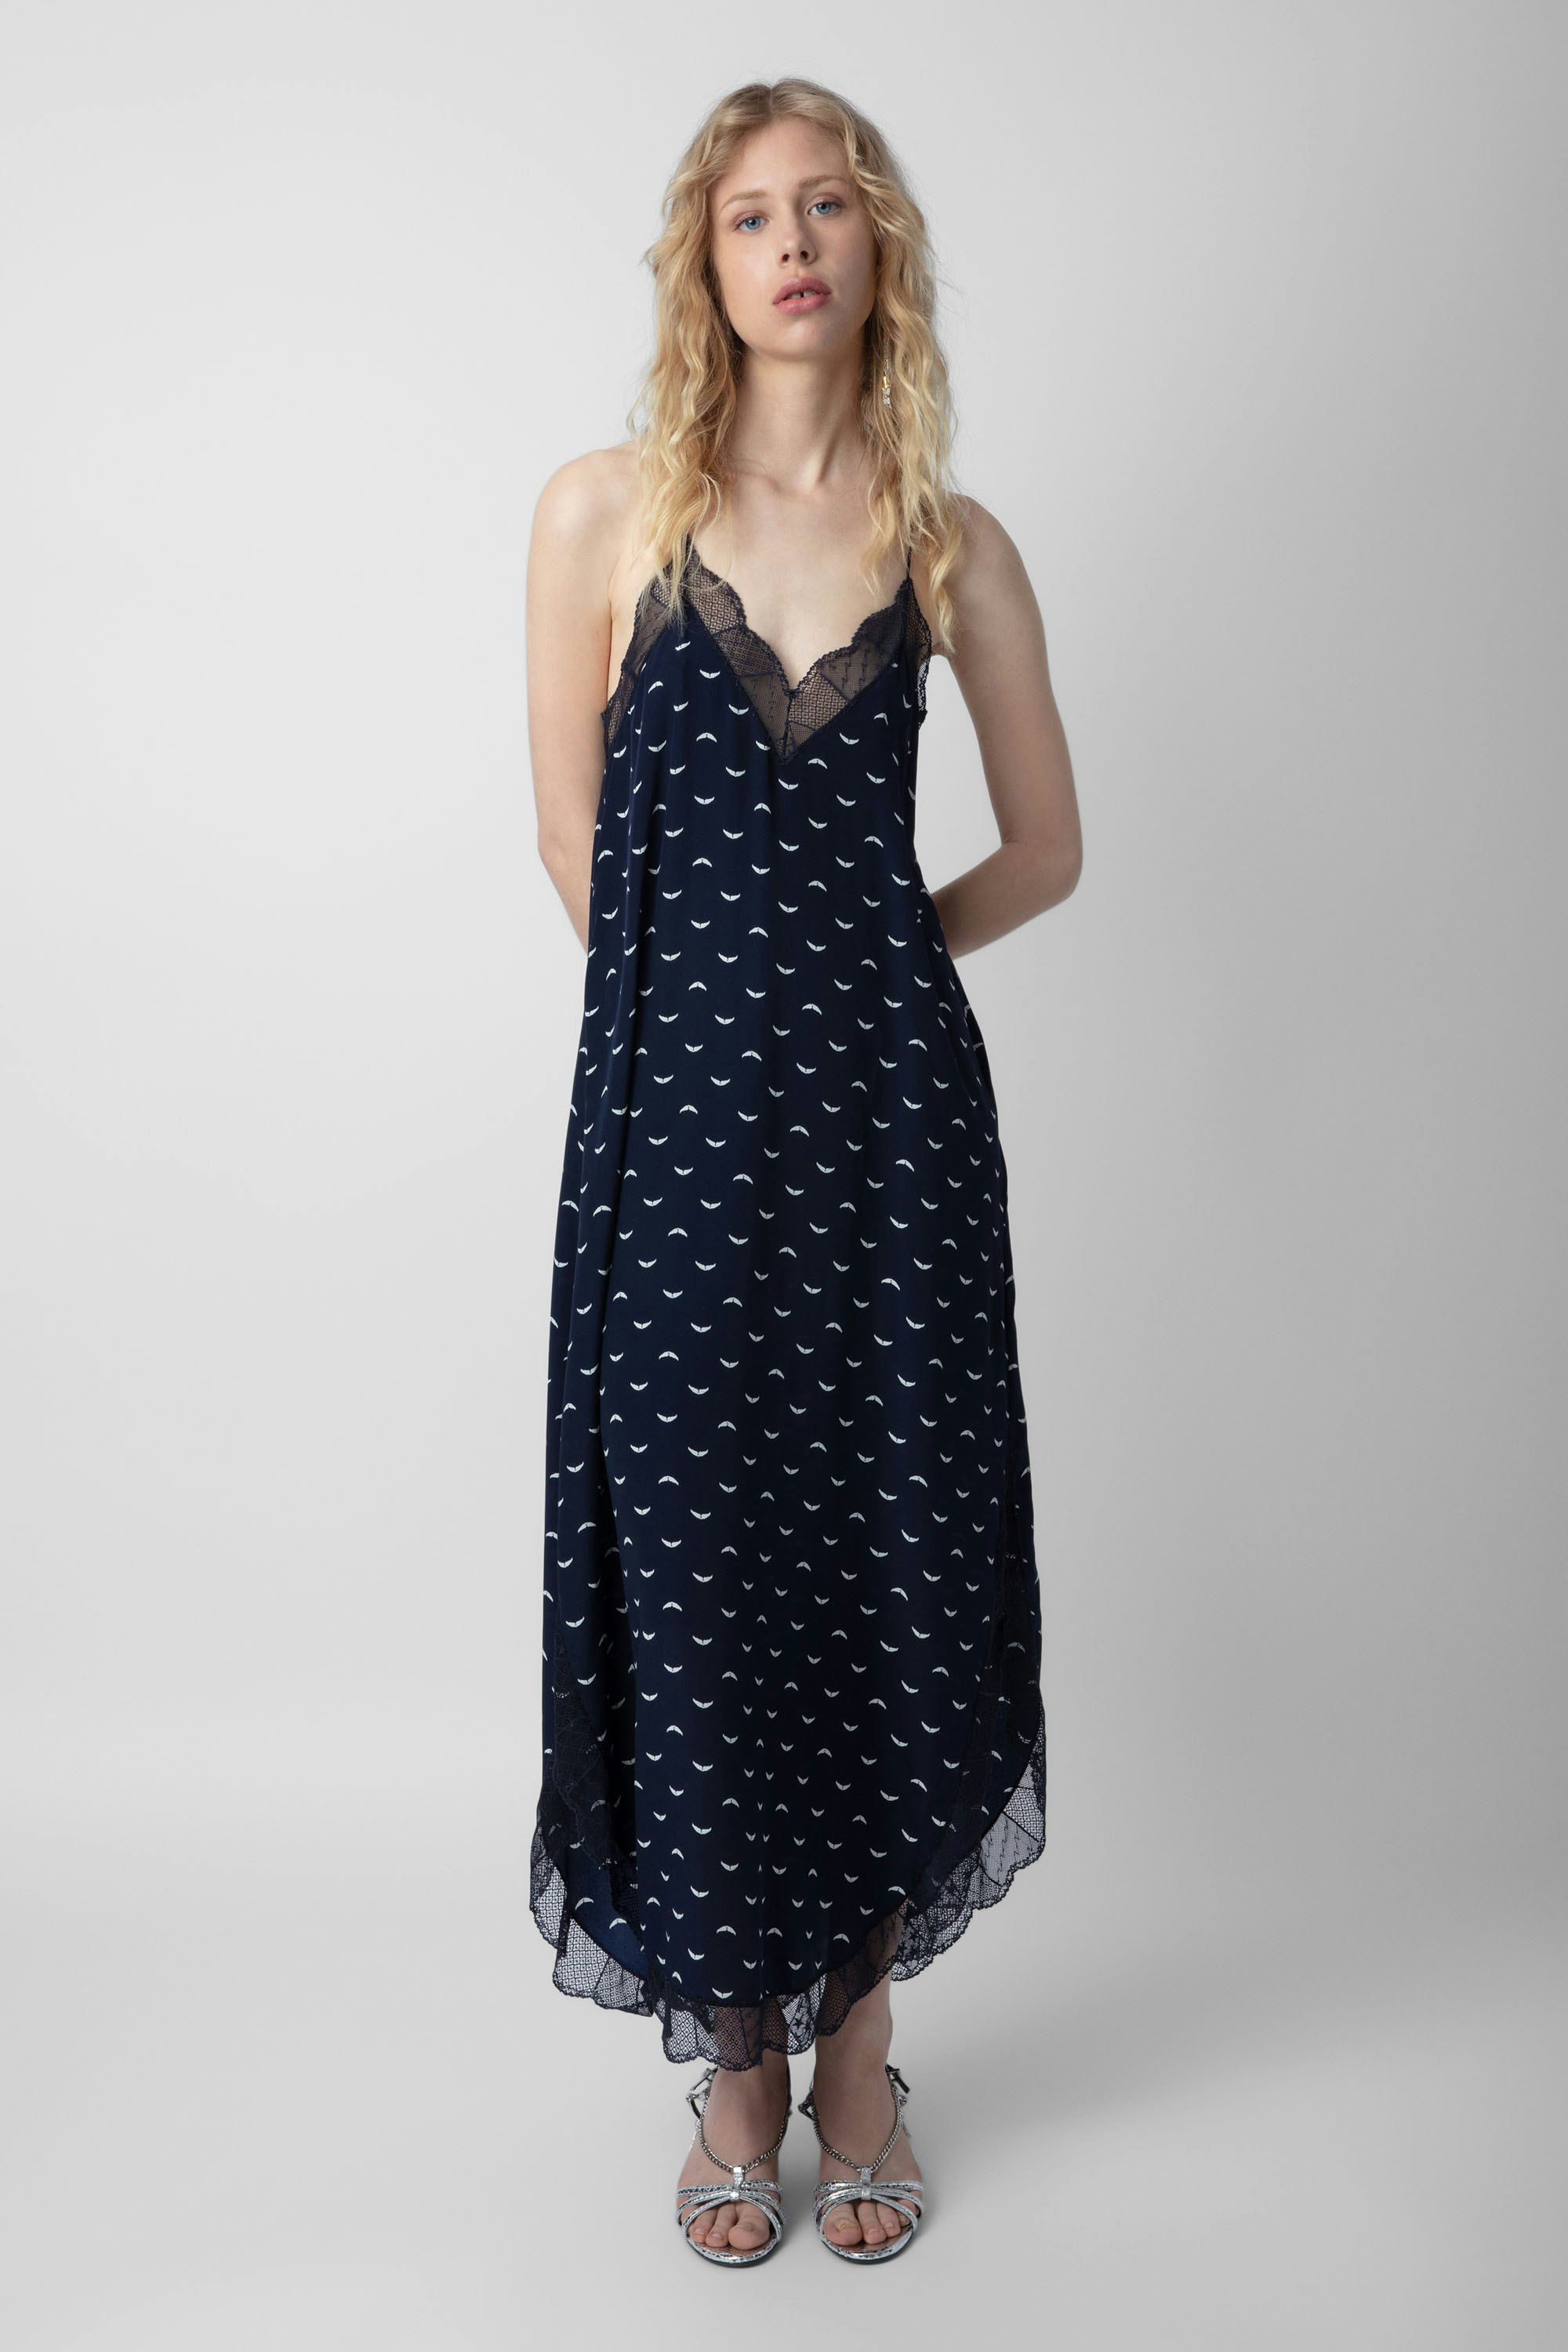 Kleid Ristyl Seide - Marineblaues langes Kleid aus Seide, mit Flügelmotiv.